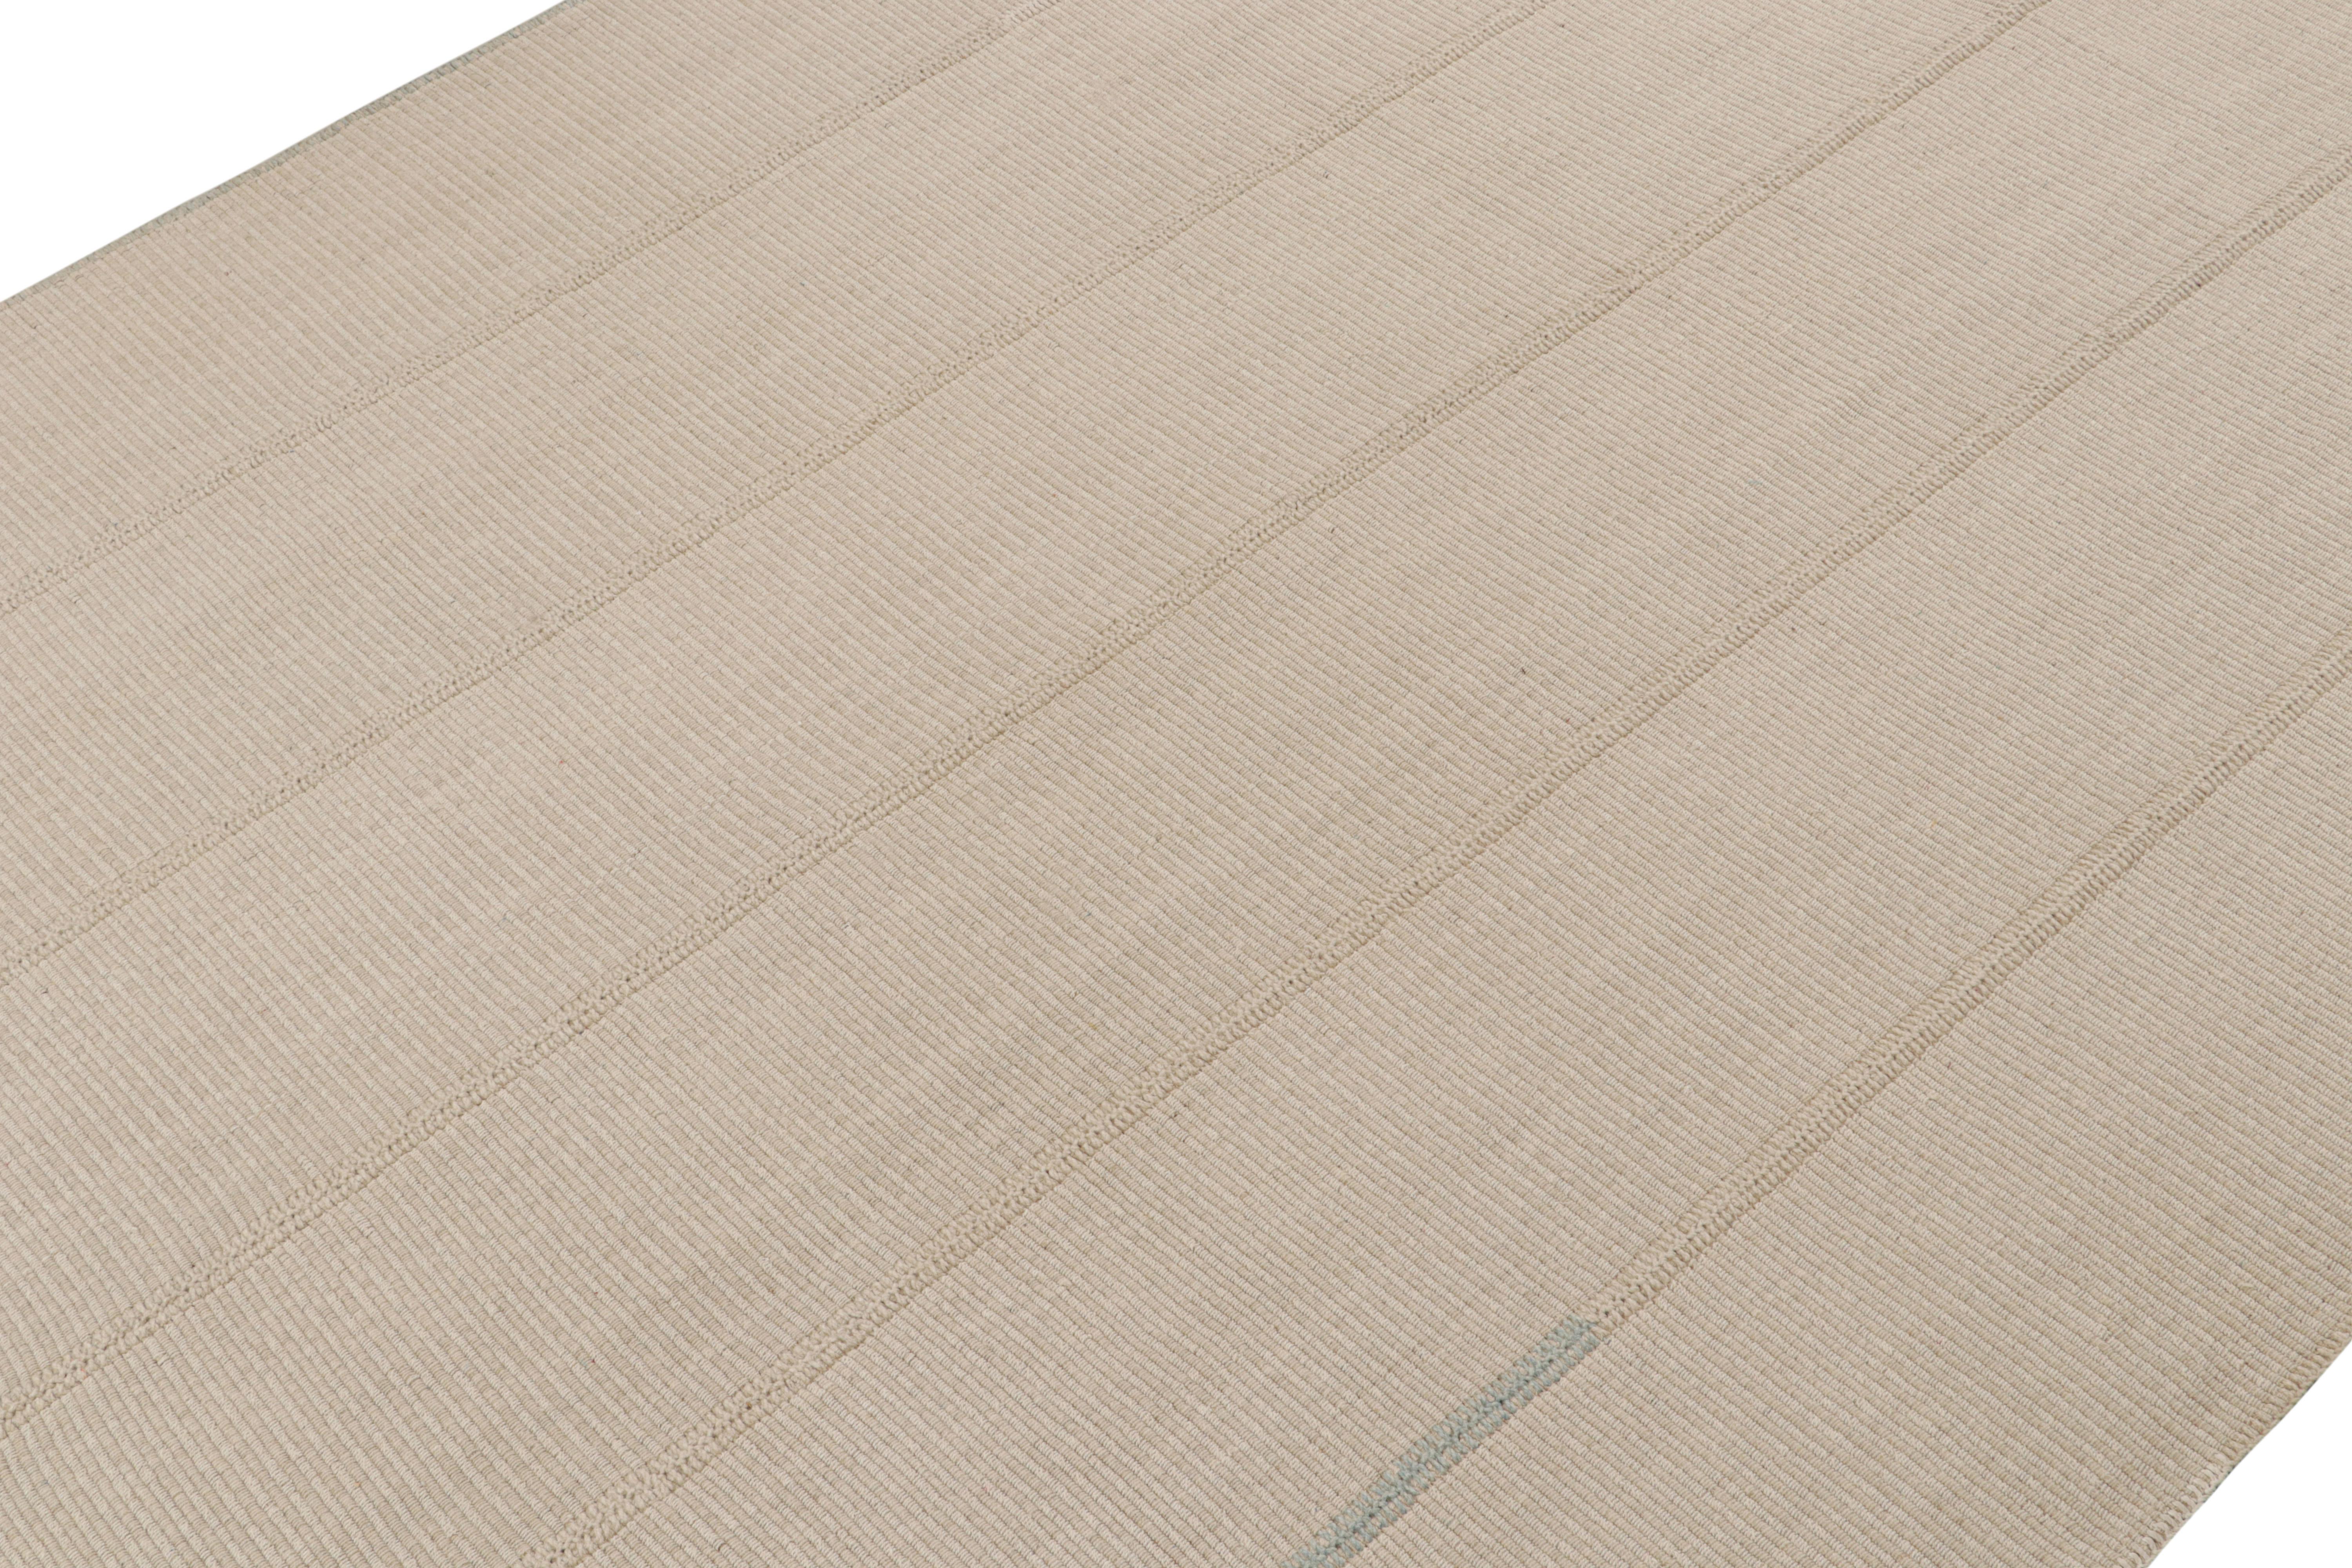 Tissé à la main en laine, ce kilim 9x12 fait partie d'une nouvelle ligne audacieuse de tissages plats contemporains de Rug & Kilim.

Sur le Design : 

Connotant une approche moderne du tissage de panneaux classique, notre dernier 